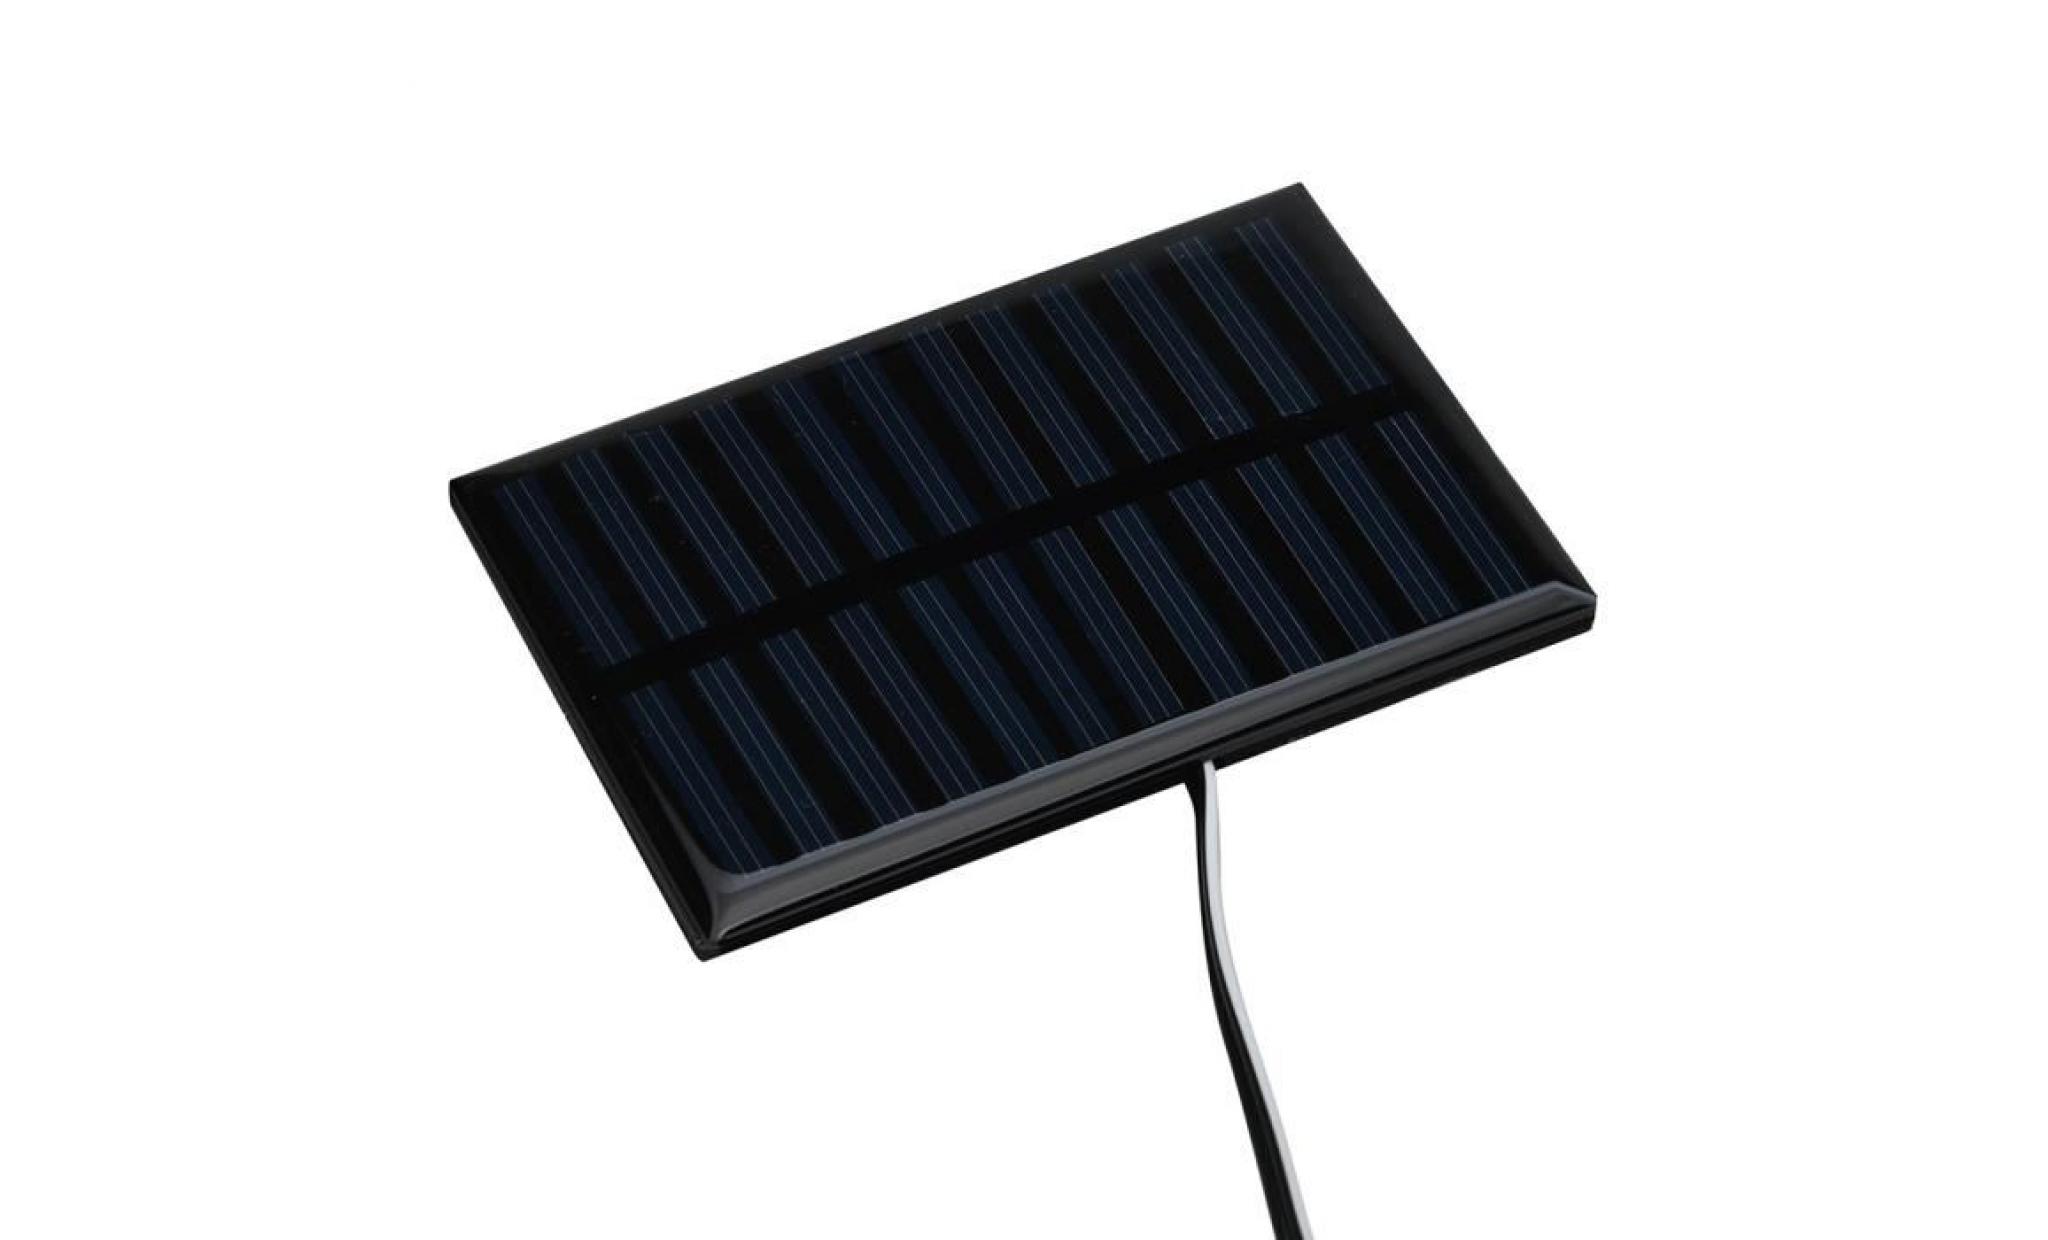 borne solaire lampe de cour extérieure de camping de 12 ampoules rechargeables portatives solaires d'ampoule rechargeable #la 366 pas cher